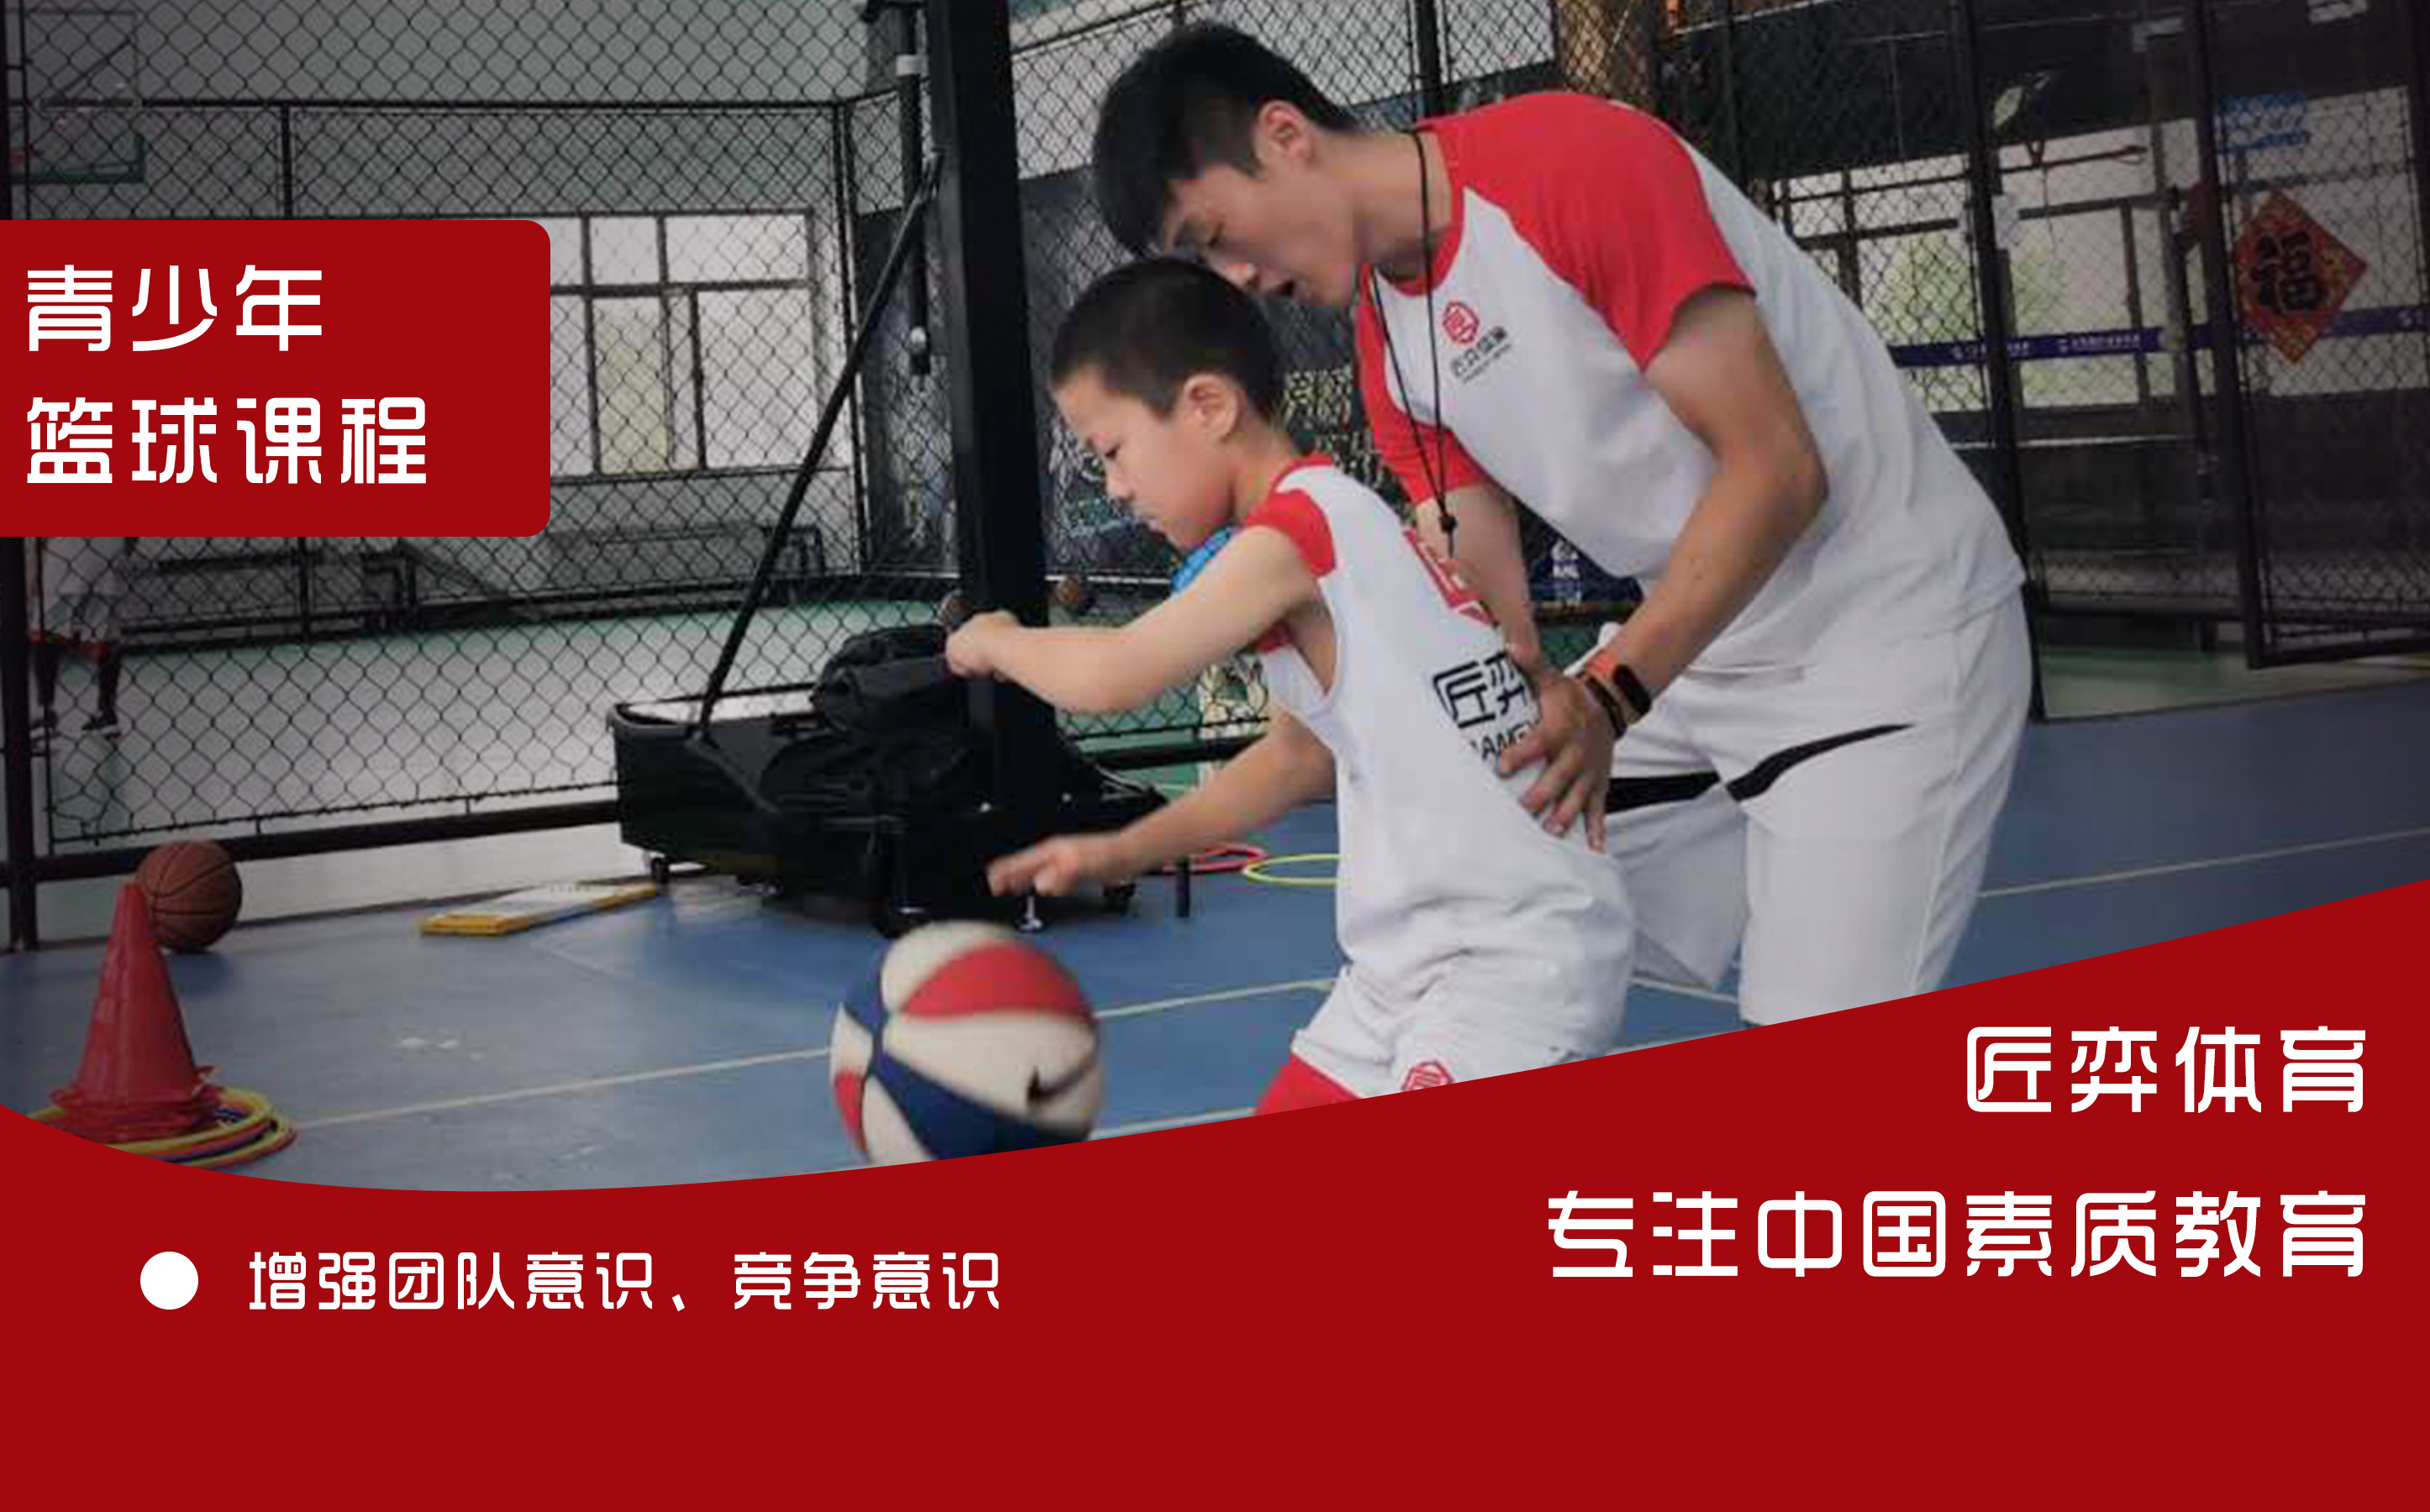 上海匠弈体育上海匠弈体育7-12岁青少年快乐篮球营图片